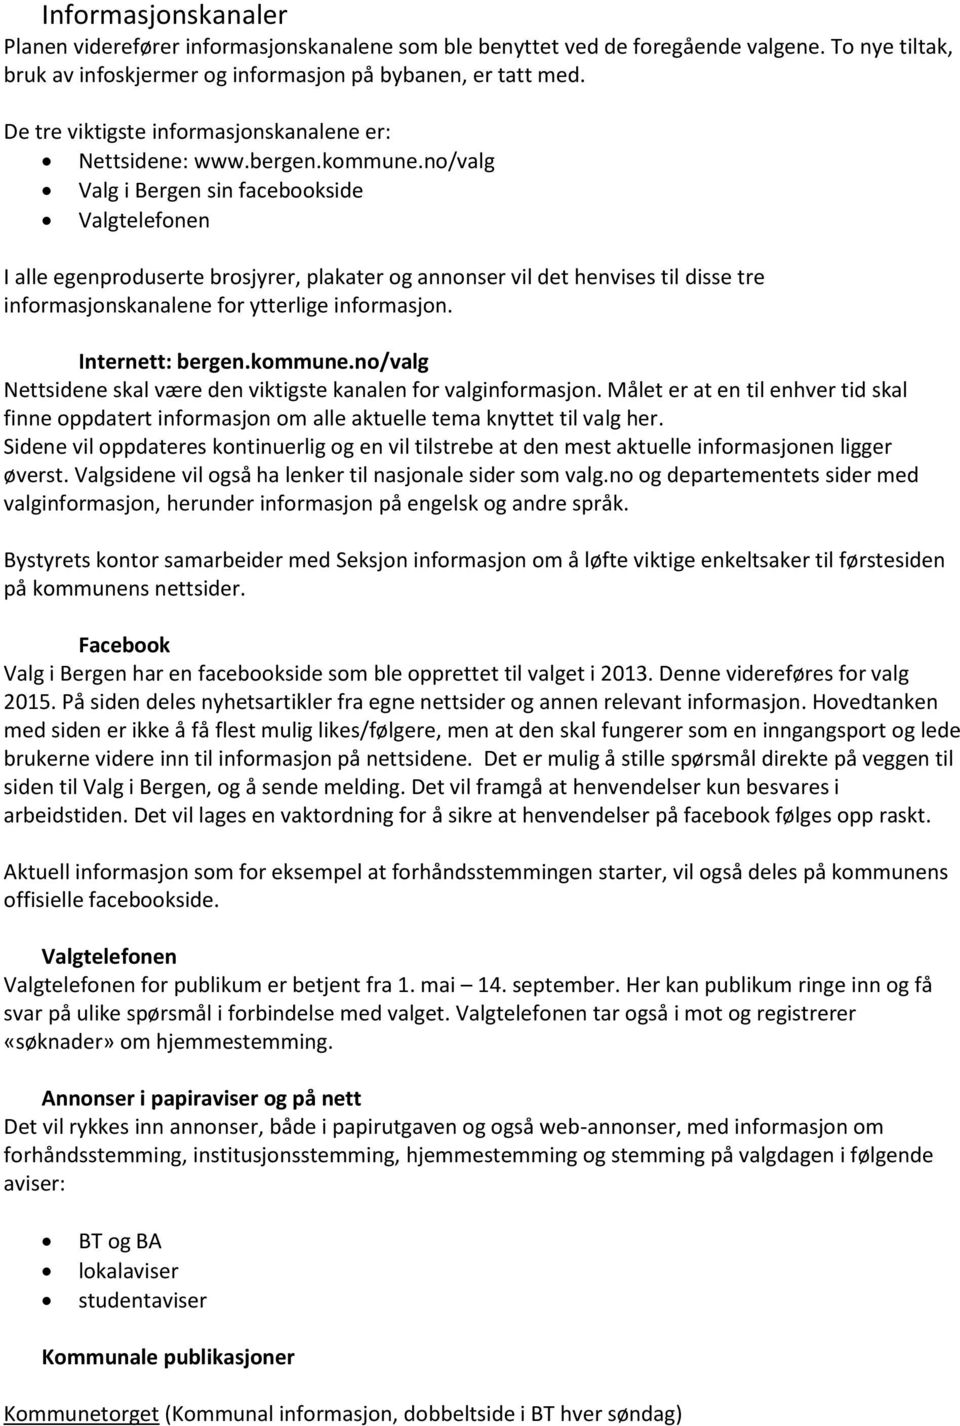 no/valg Valg i Bergen sin facebookside Valgtelefonen I alle egenproduserte brosjyrer, plakater og annonser vil det henvises til disse tre informasjonskanalene for ytterlige informasjon.